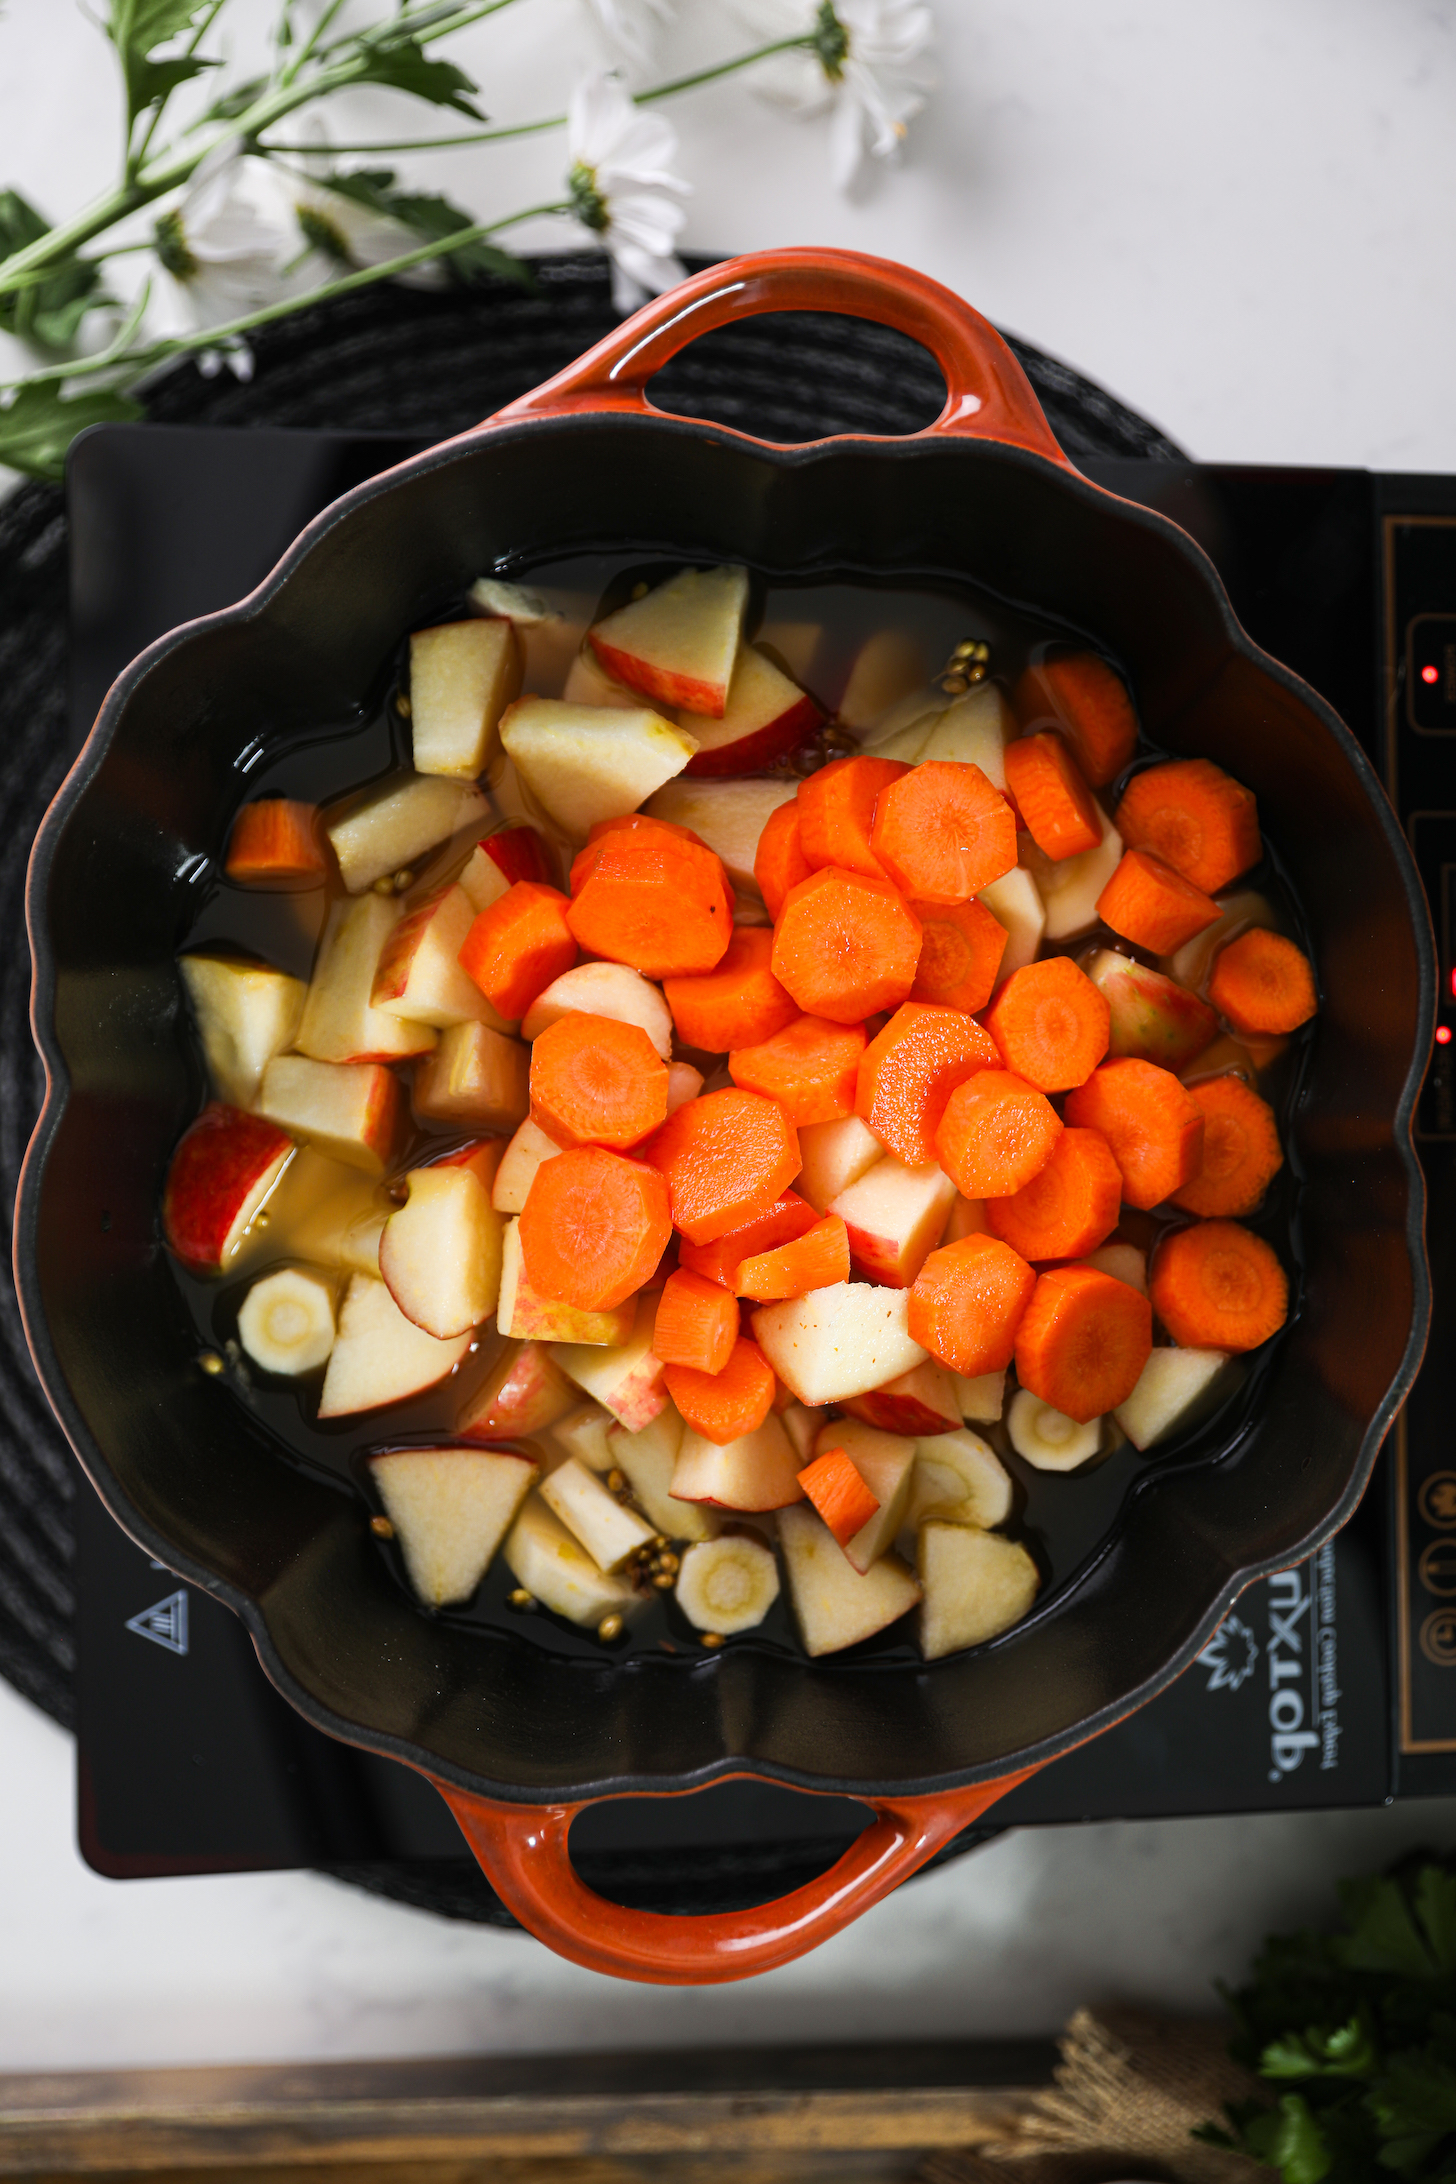 نمای بالای هویج، سیب و ازگیل خرد شده در داخل یک قابلمه پخت و پز.